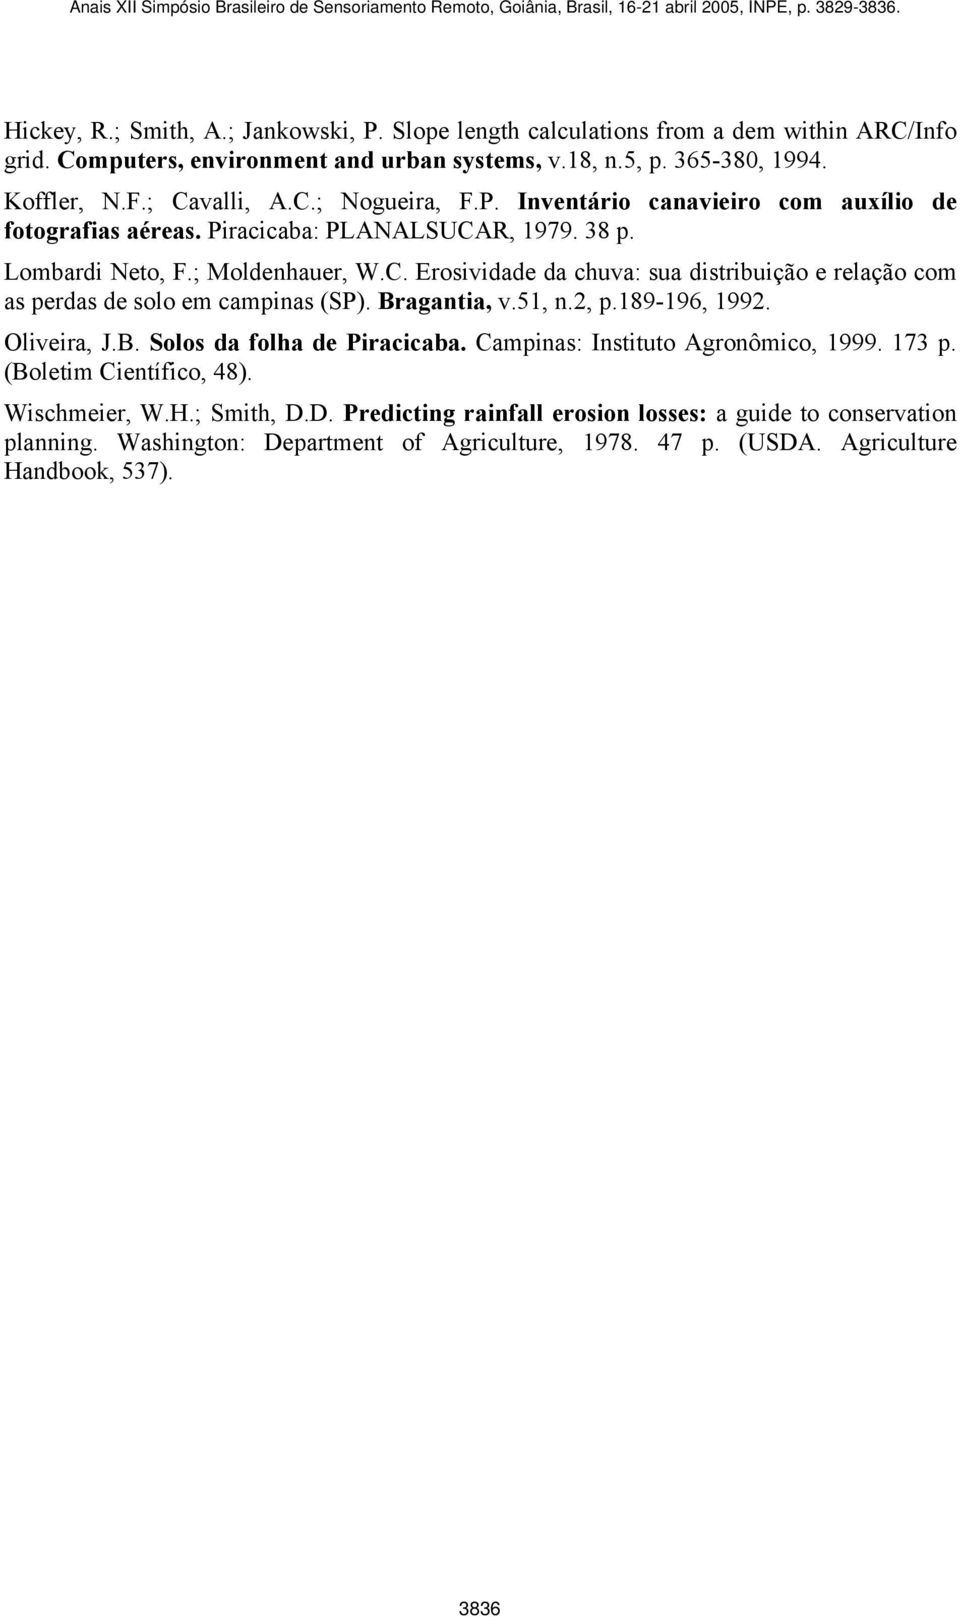 Bragantia, v.51, n.2, p.189-196, 1992. Oliveira, J.B. Solos da folha de Piracicaba. Campinas: Instituto Agronômico, 1999. 173 p. (Boletim Científico, 48). Wischmeier, W.H.; Smith, D.